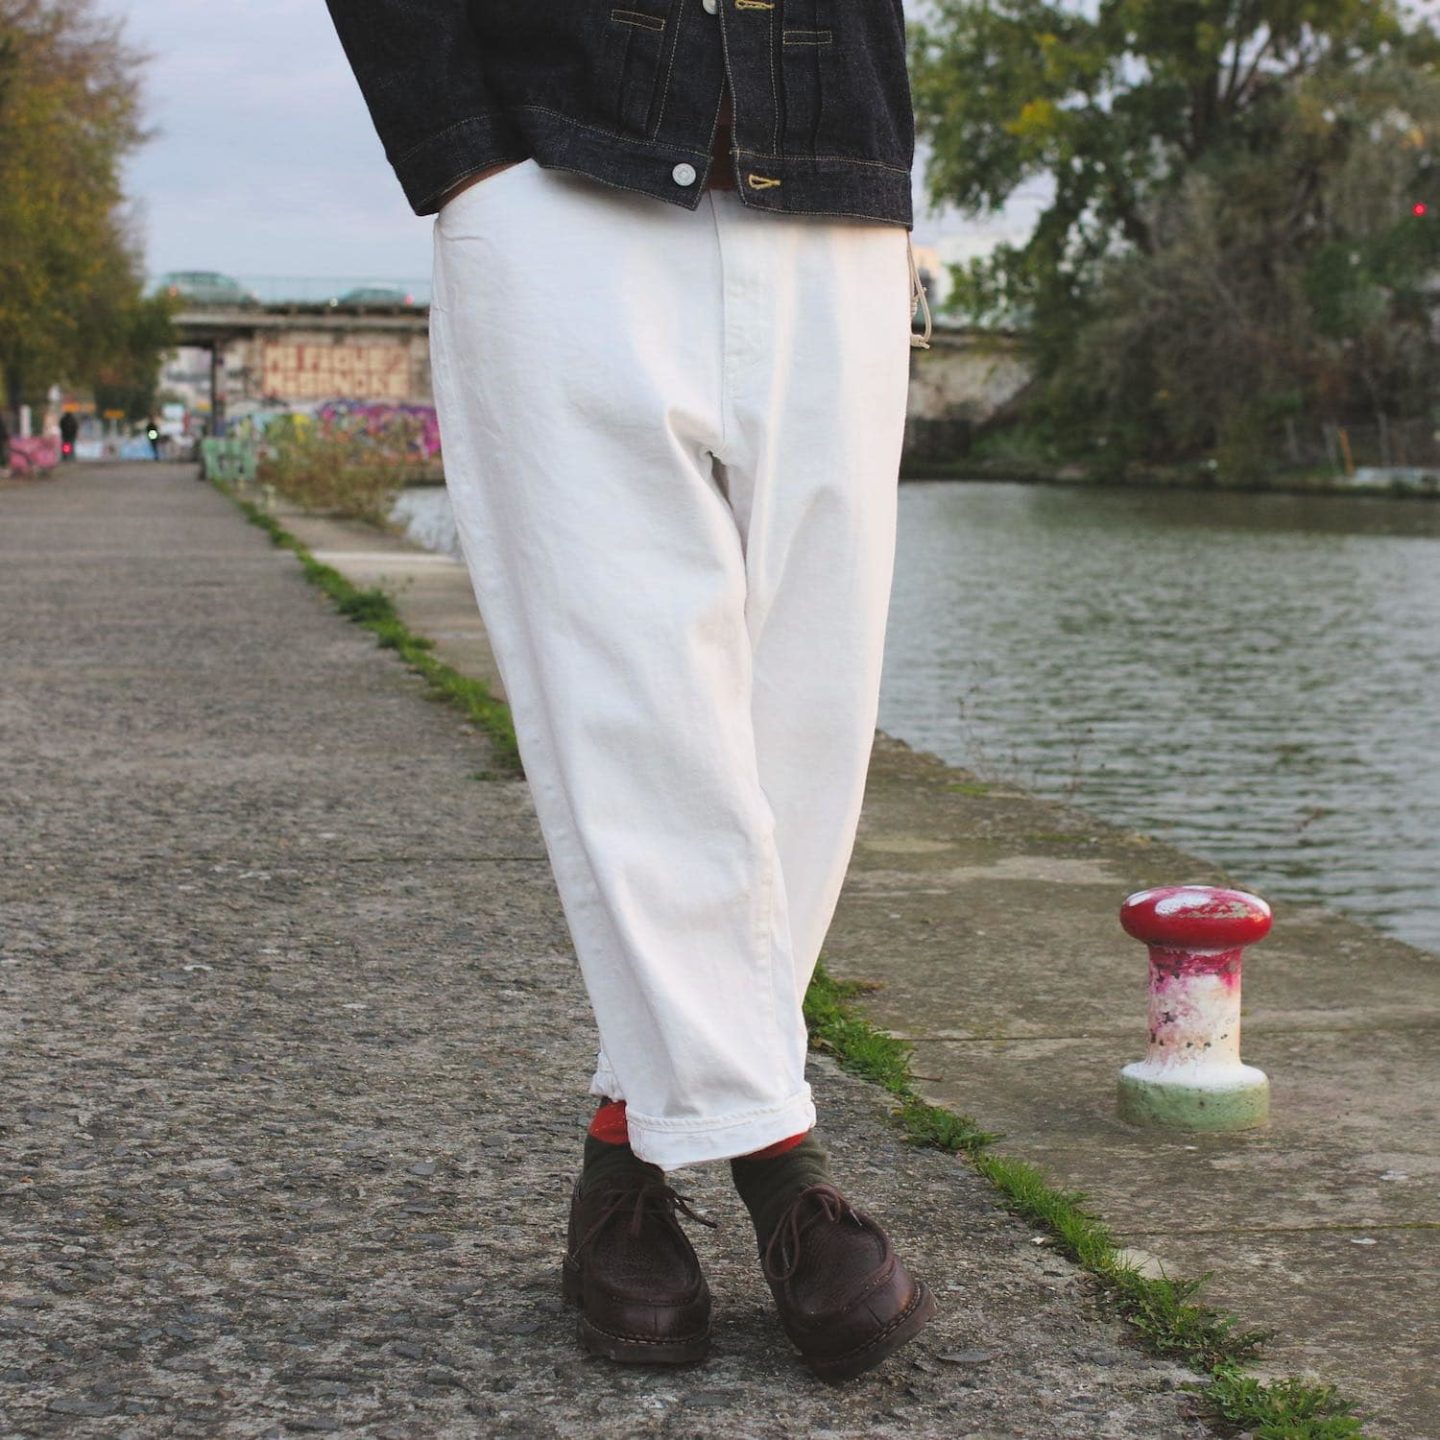 jean blanc homme large borali sample avec chaussettes écossaises gant et paraboot michael bison